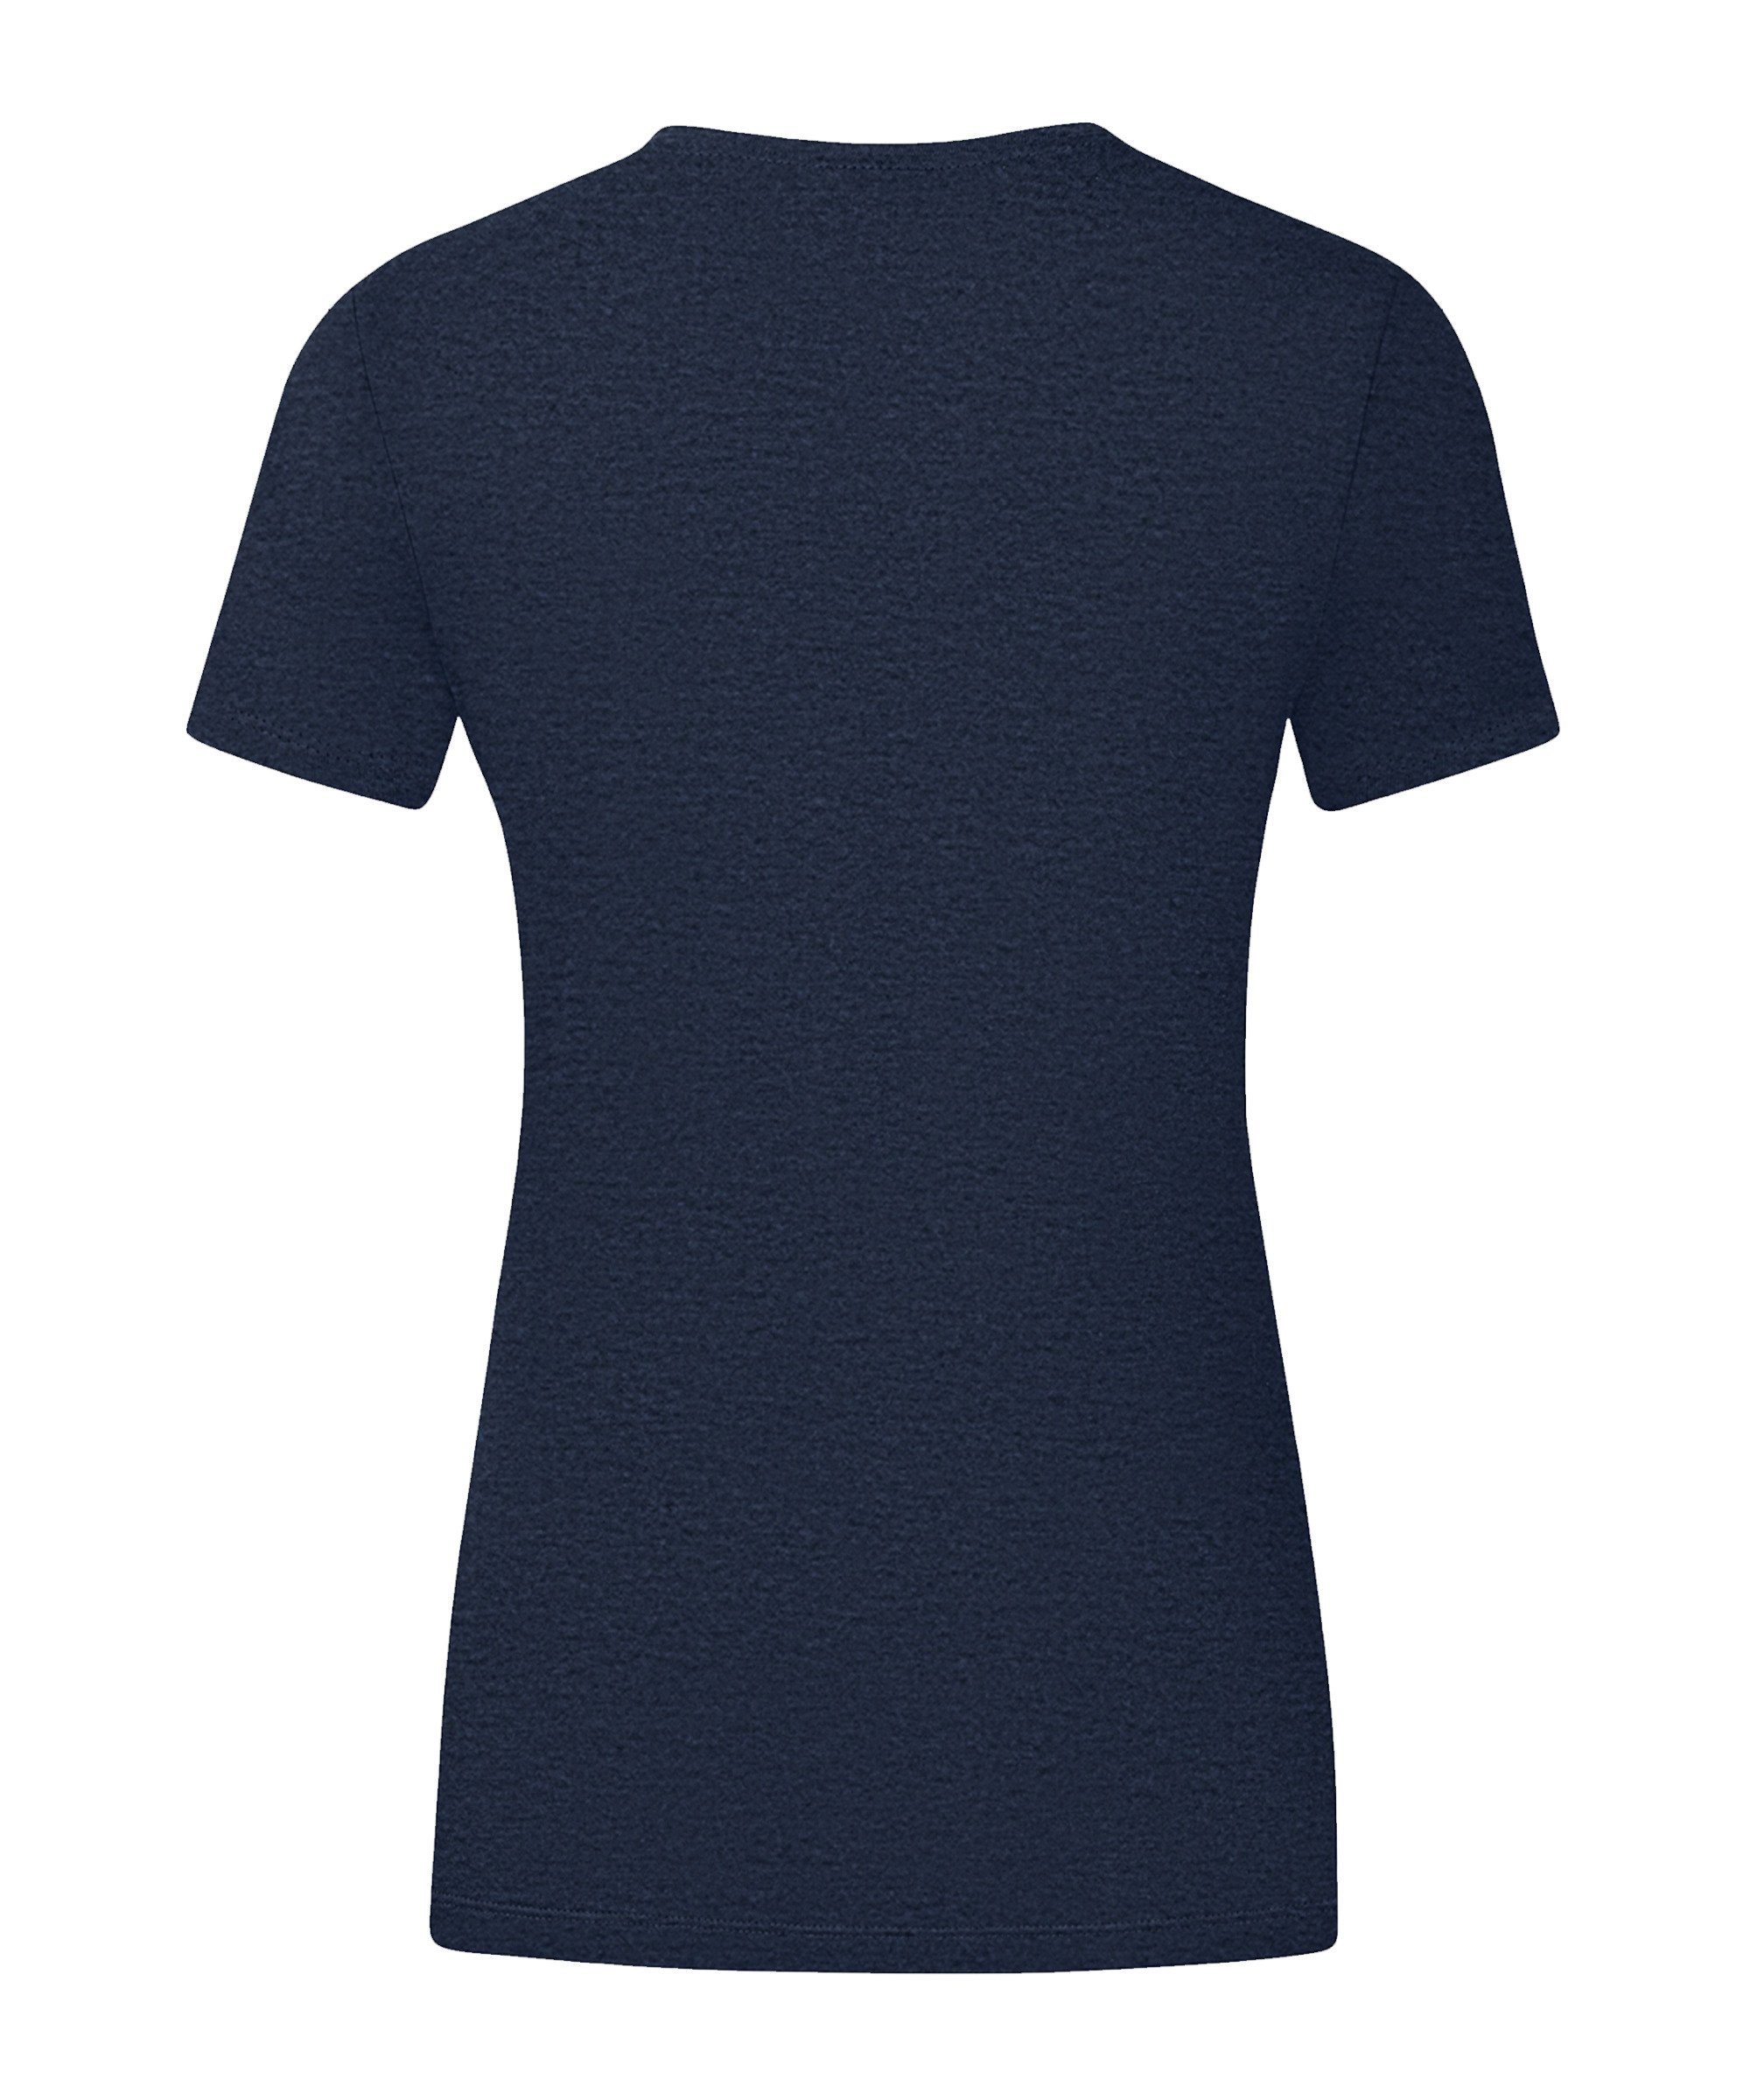 T-Shirt Damen T-Shirt Promo default blaugelb Jako